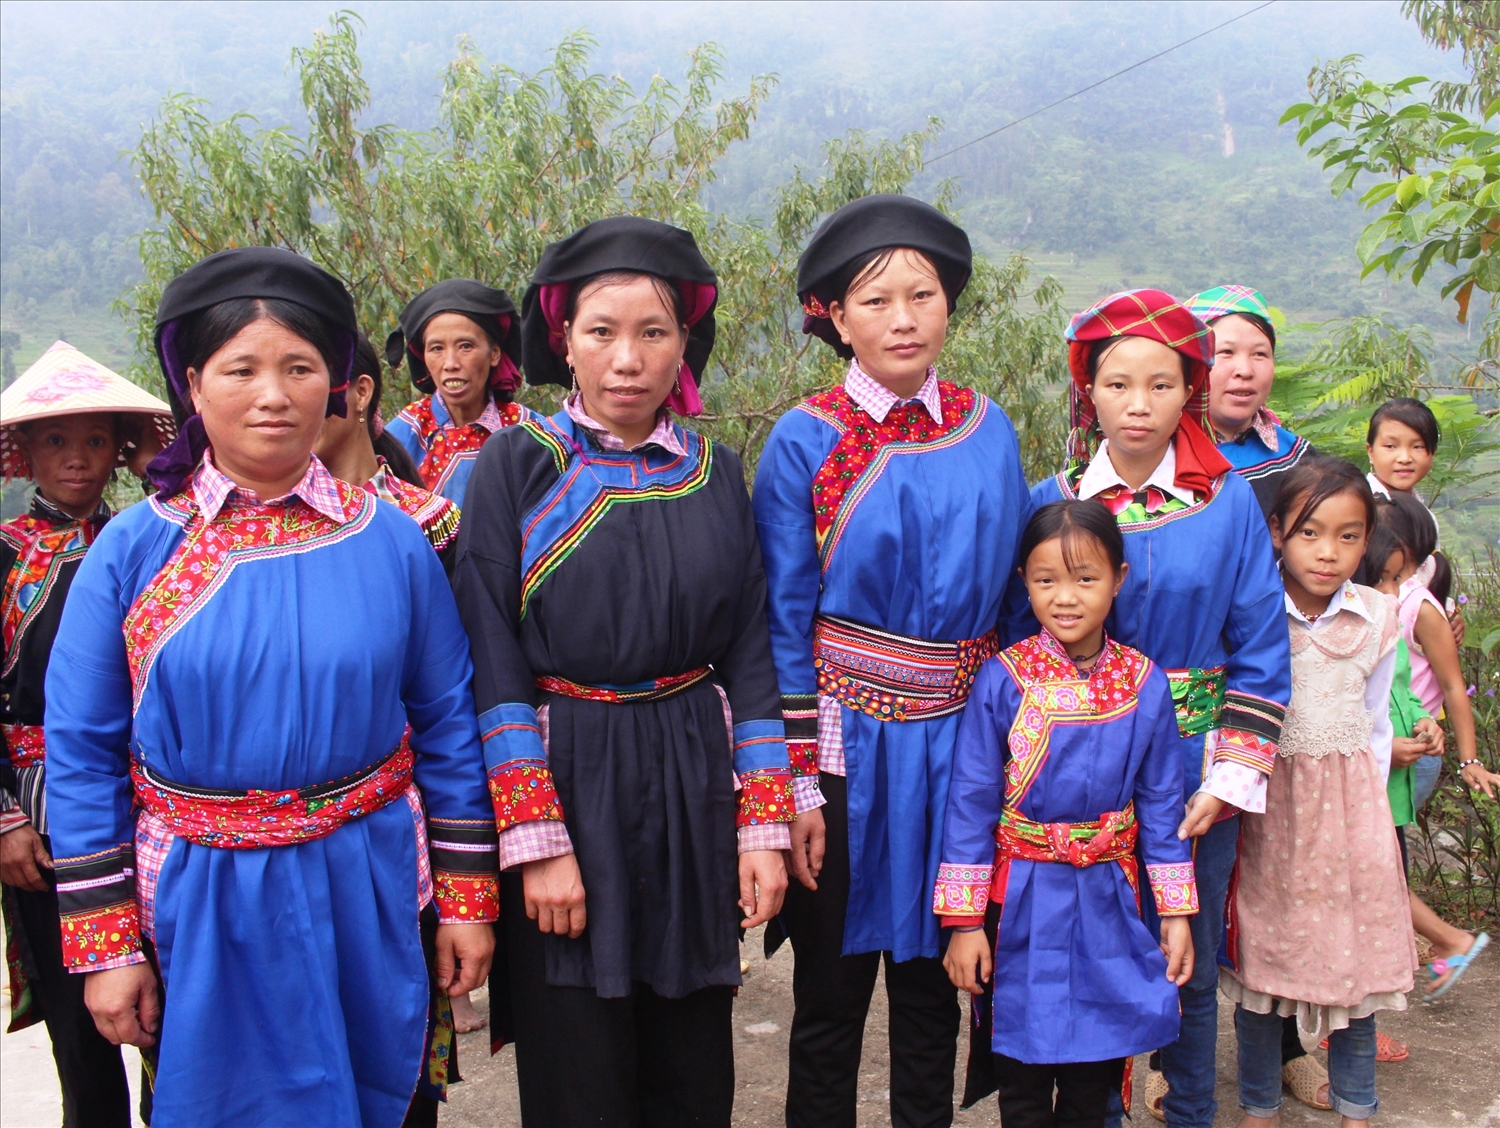 Trang phục truyền thống của phụ nữ Cờ Lao, cũng là trang phục mà cô dâu sẽ mặc trong lễ cưới.